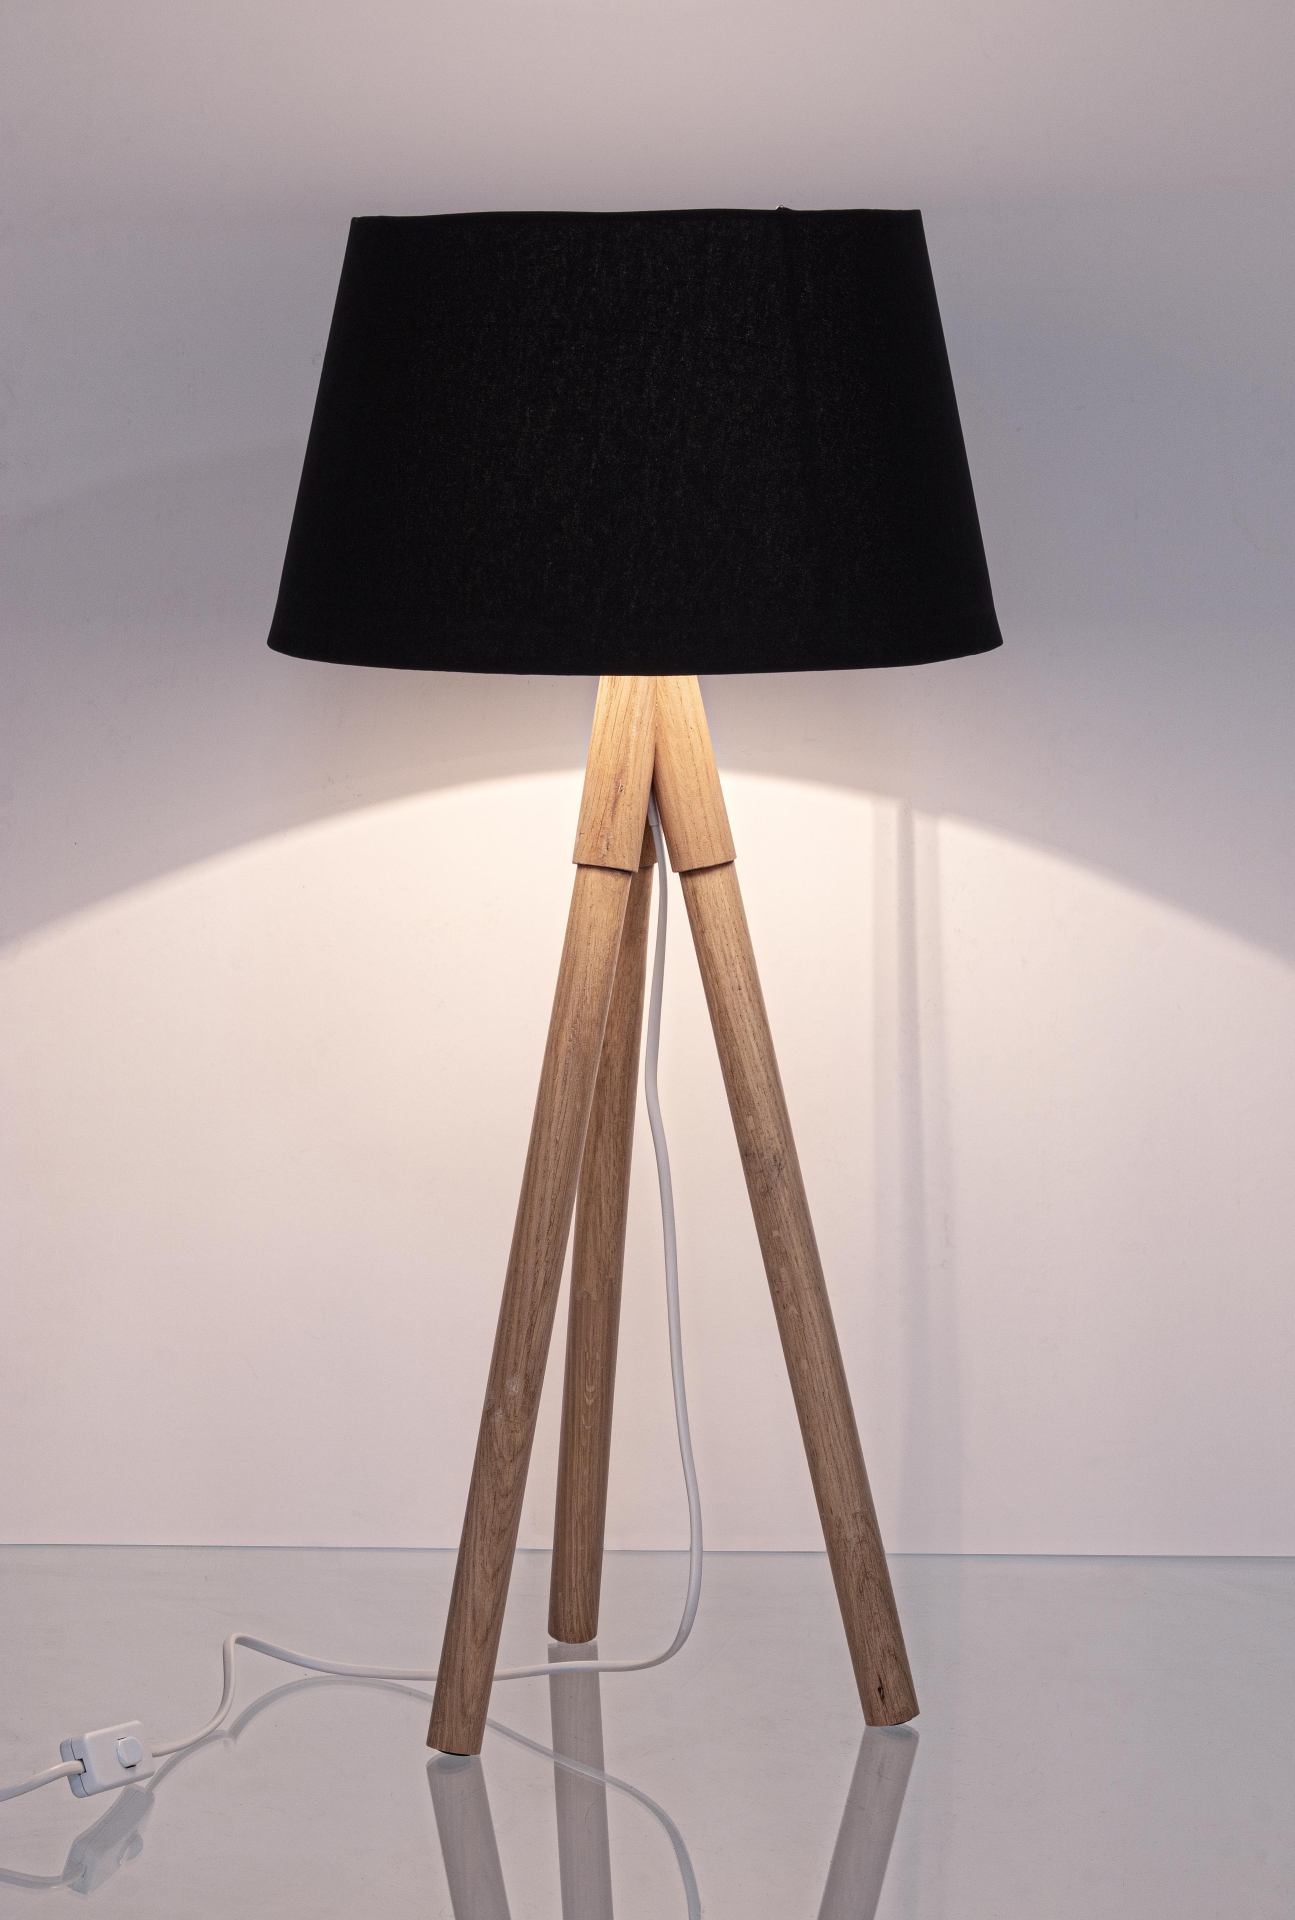 Die Tischleuchte Wallas überzeugt mit ihrem klassischen Design. Gefertigt wurde sie aus Tannenholz, welches einen schwarzen Farbton besitzt. Der Lampenschirm ist aus Terital und hat eine weiße Farbe. Die Lampe besitzt eine Höhe von 69 cm.